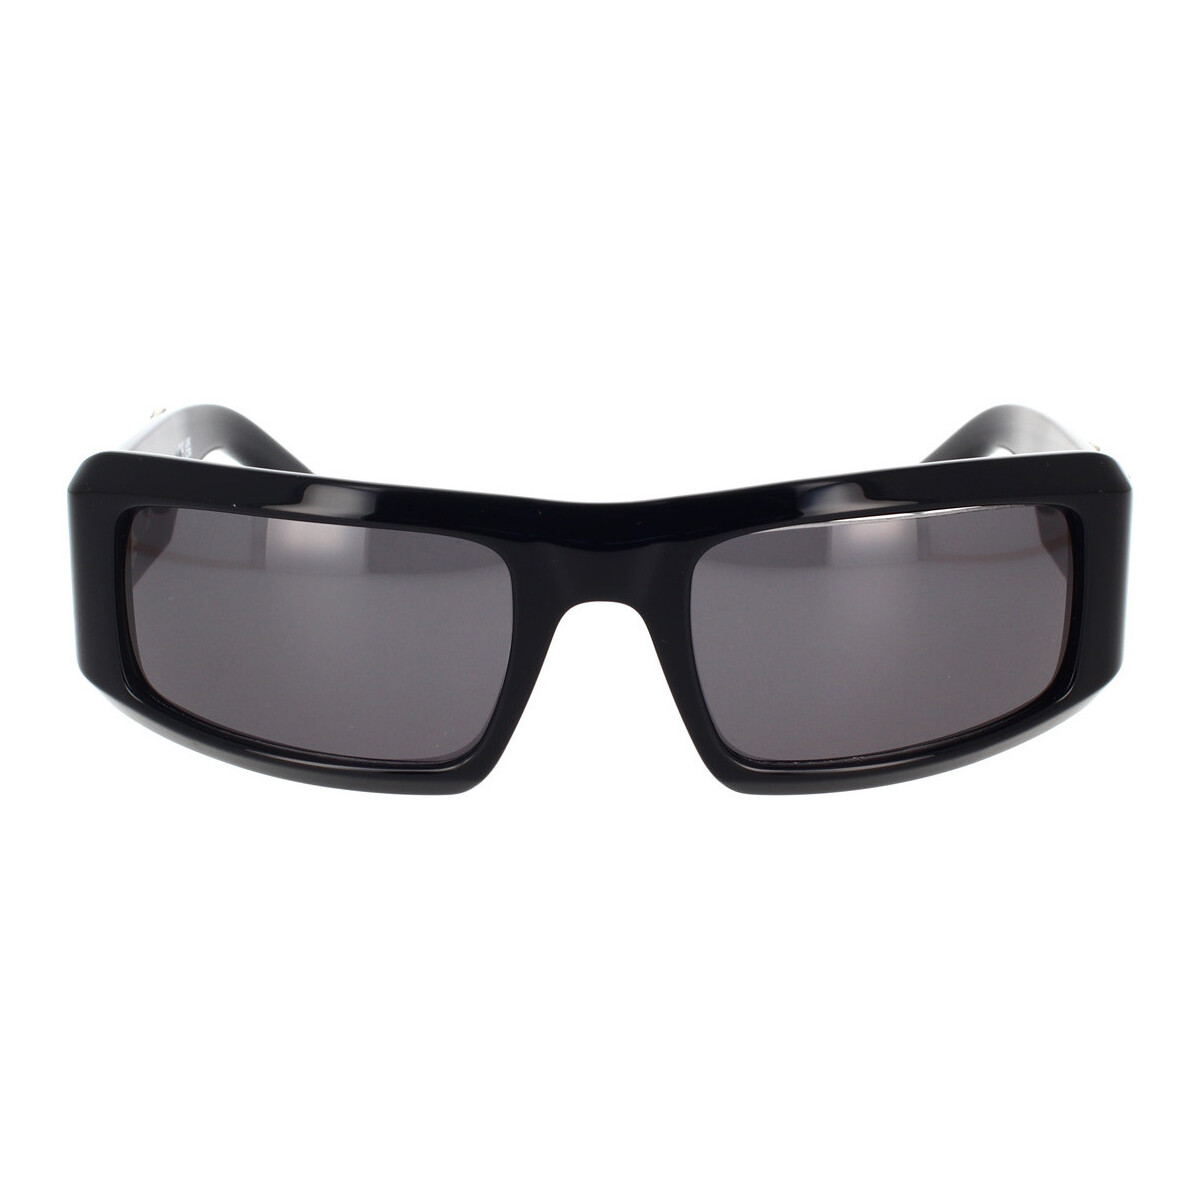 Hodinky & Bižutéria Slnečné okuliare Off-White Occhiali da Sole Palm Angels Kerman 11007 Čierna